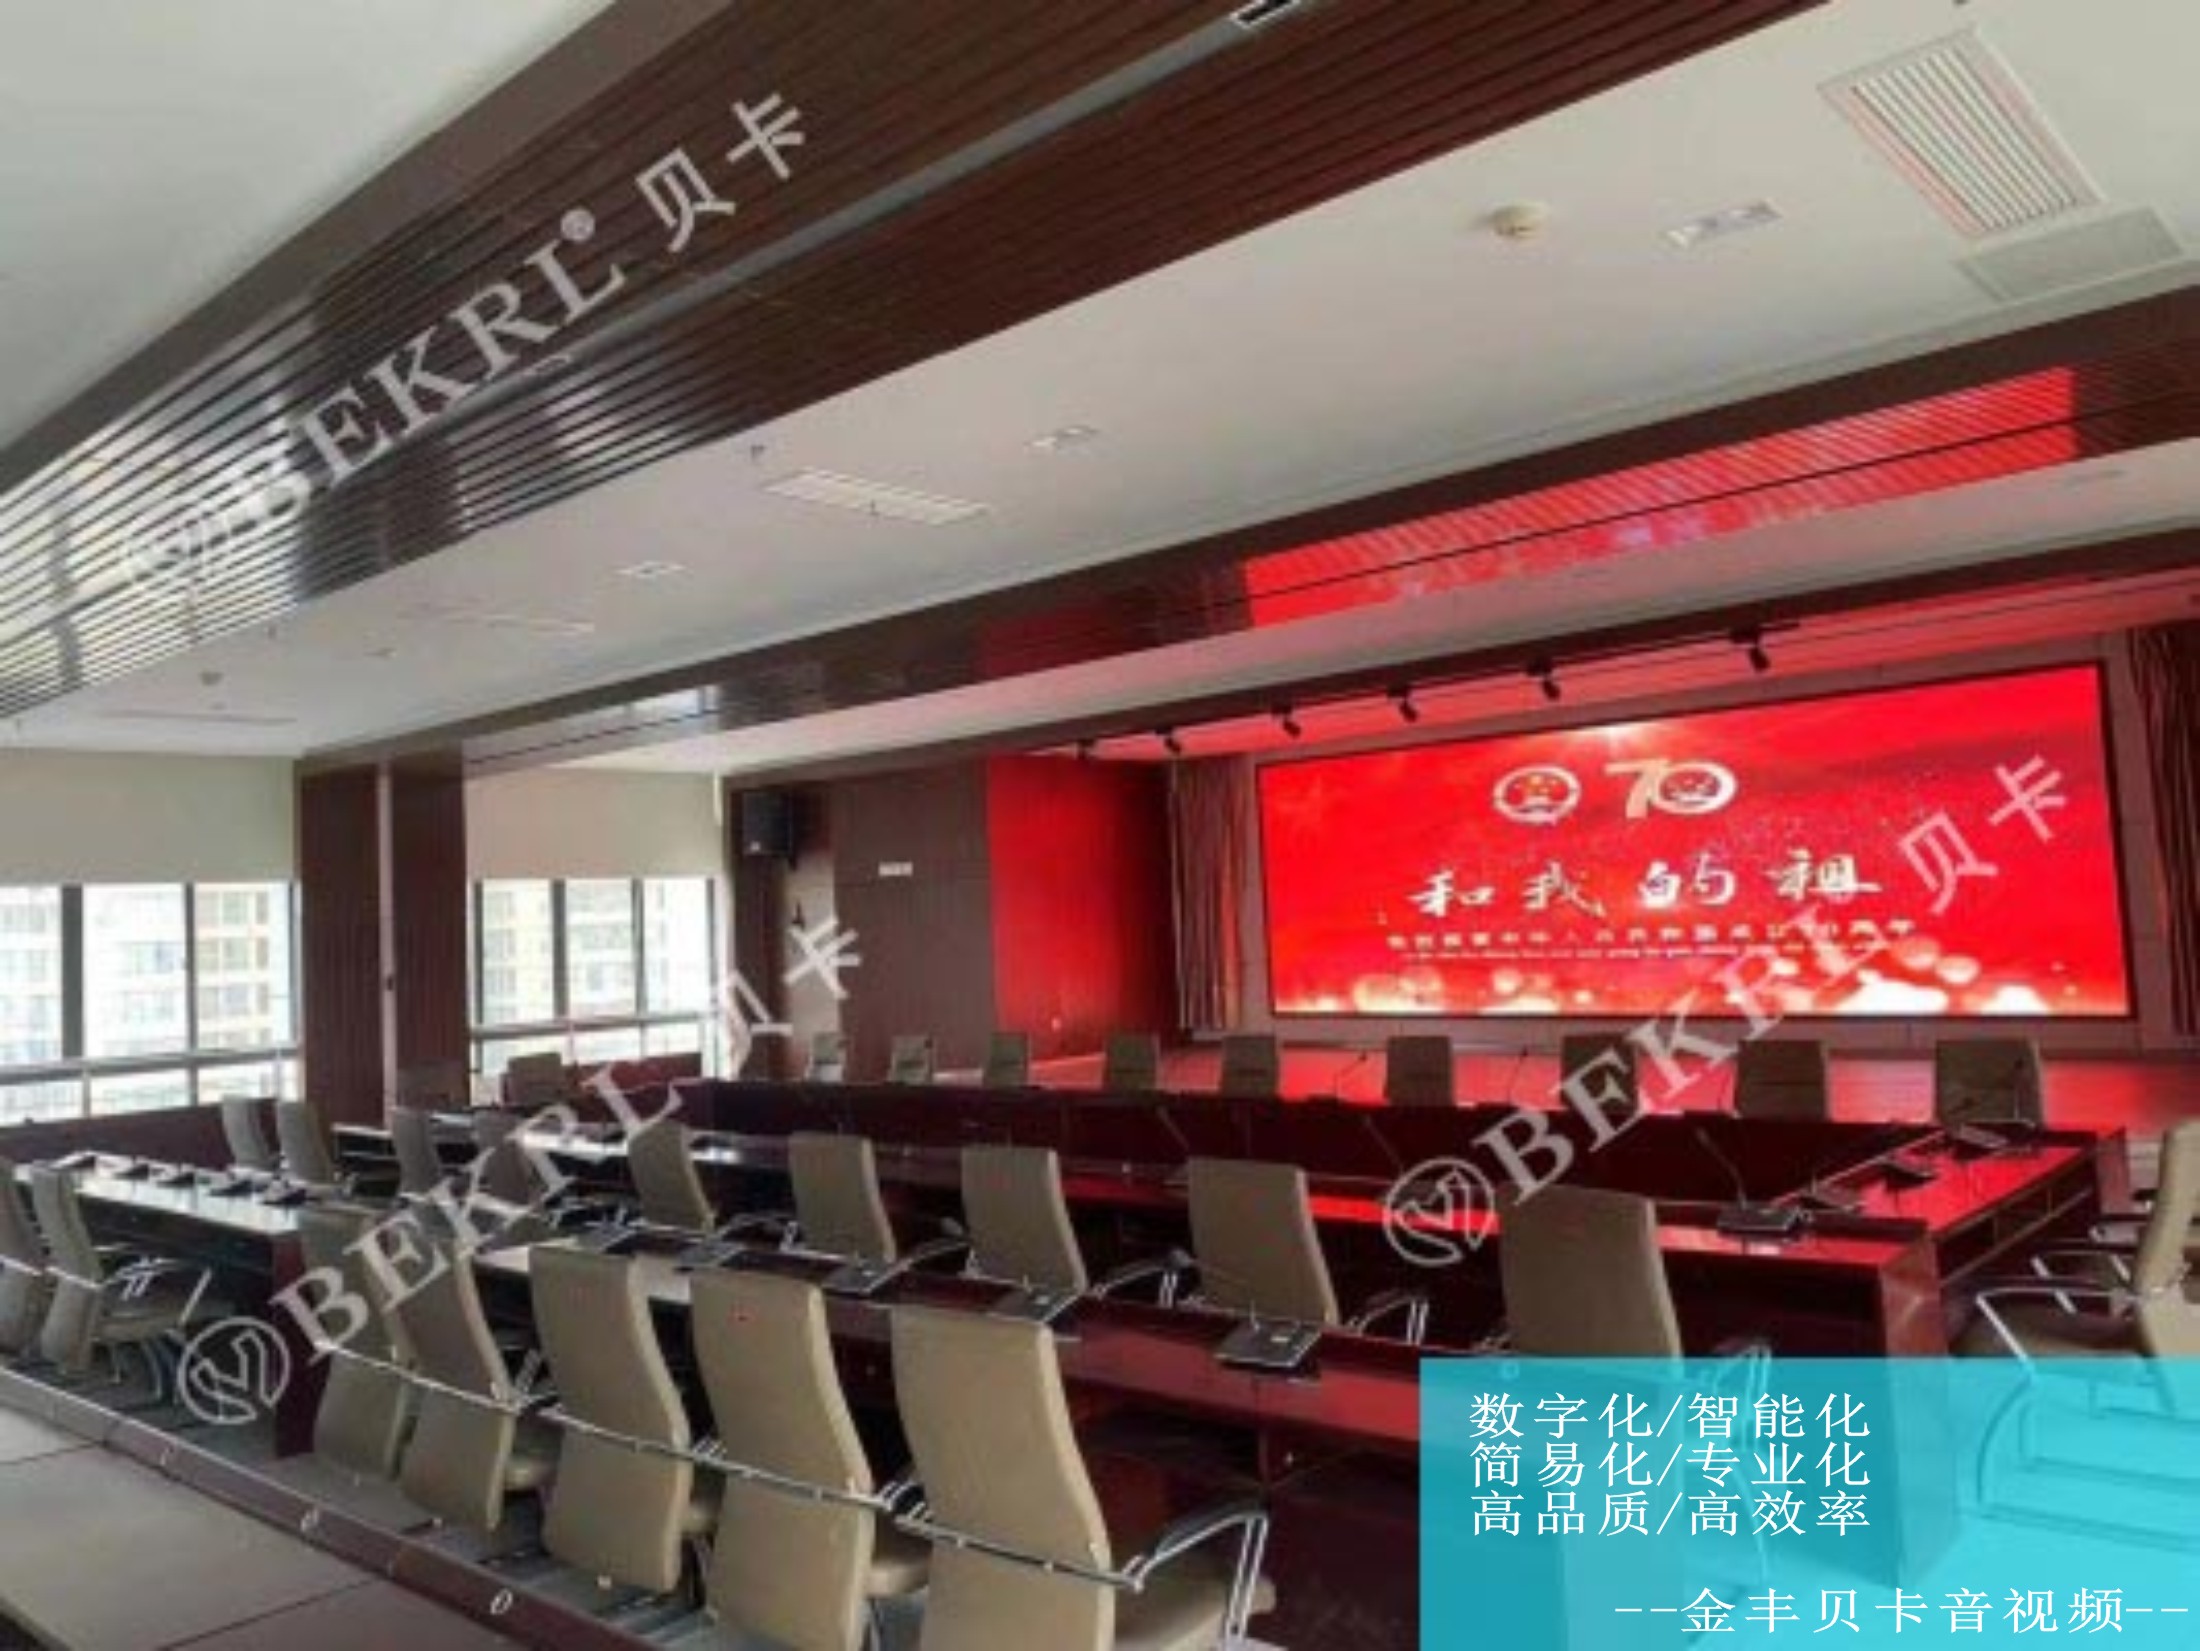 【工程案例】无线手拉手会议系统应用于郑州某综合利用研究所